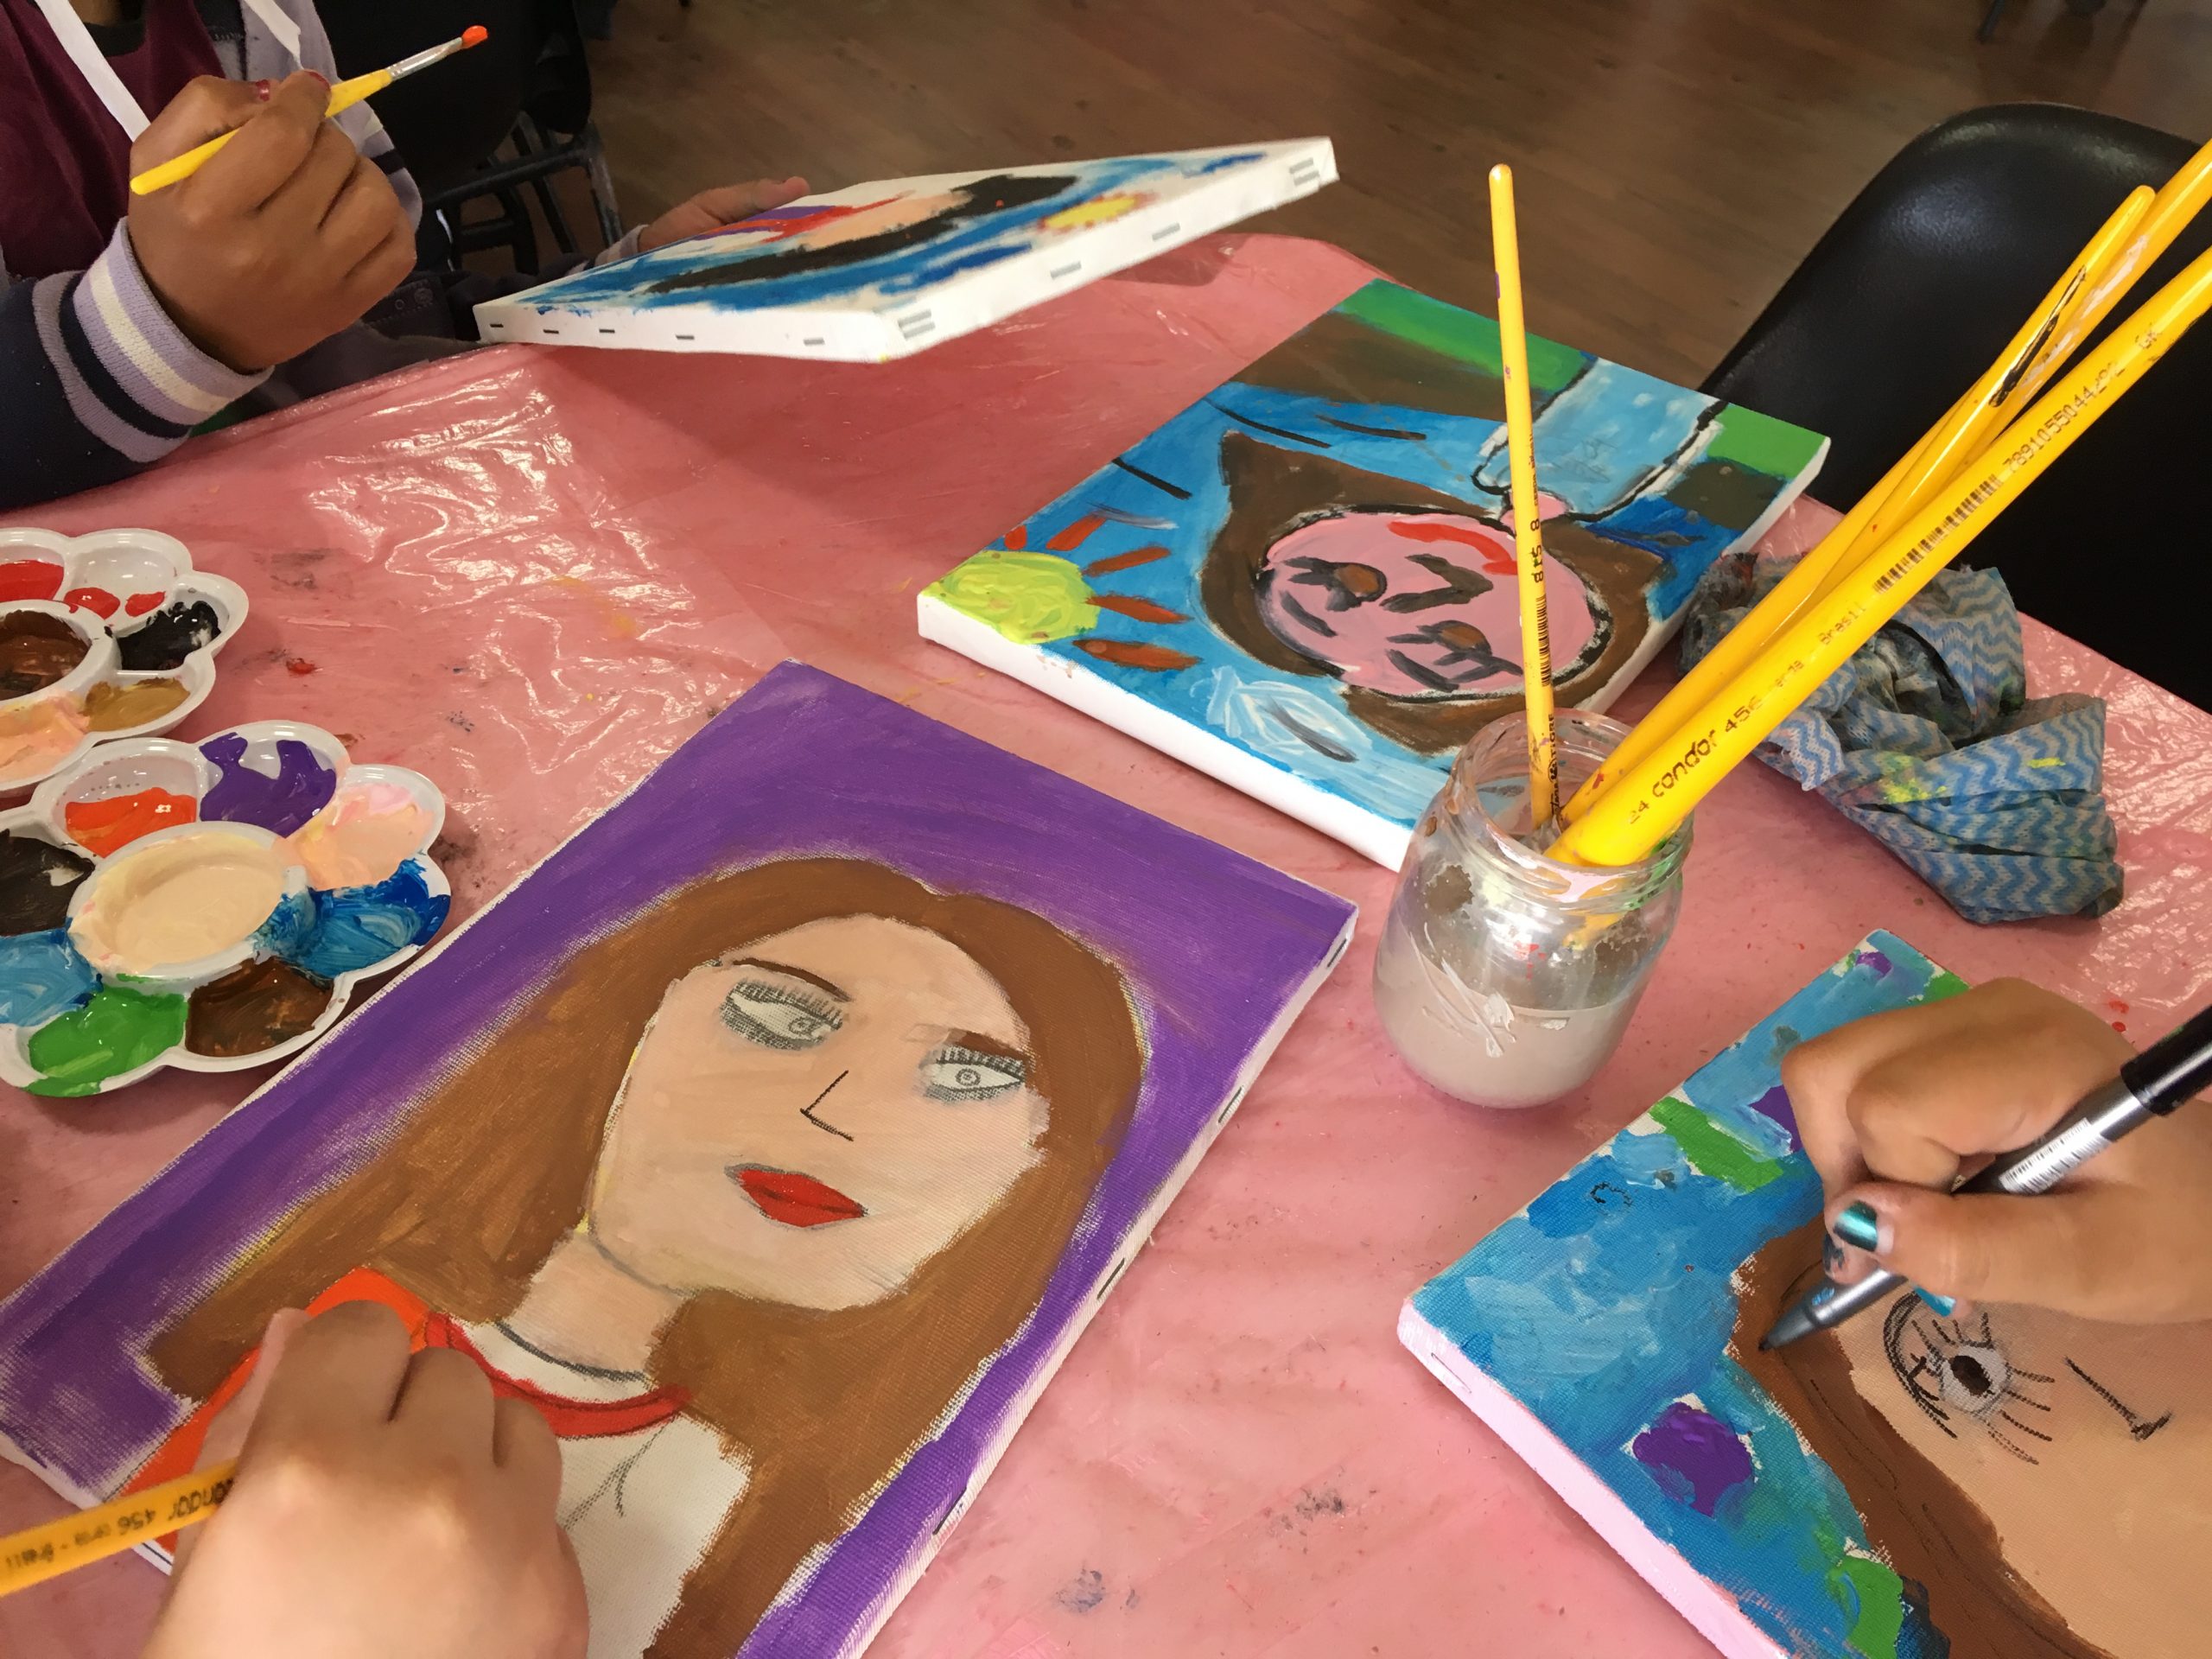 Sobre uma mesa há quatro quadros com pintura de autorretratos realizados por crianças.